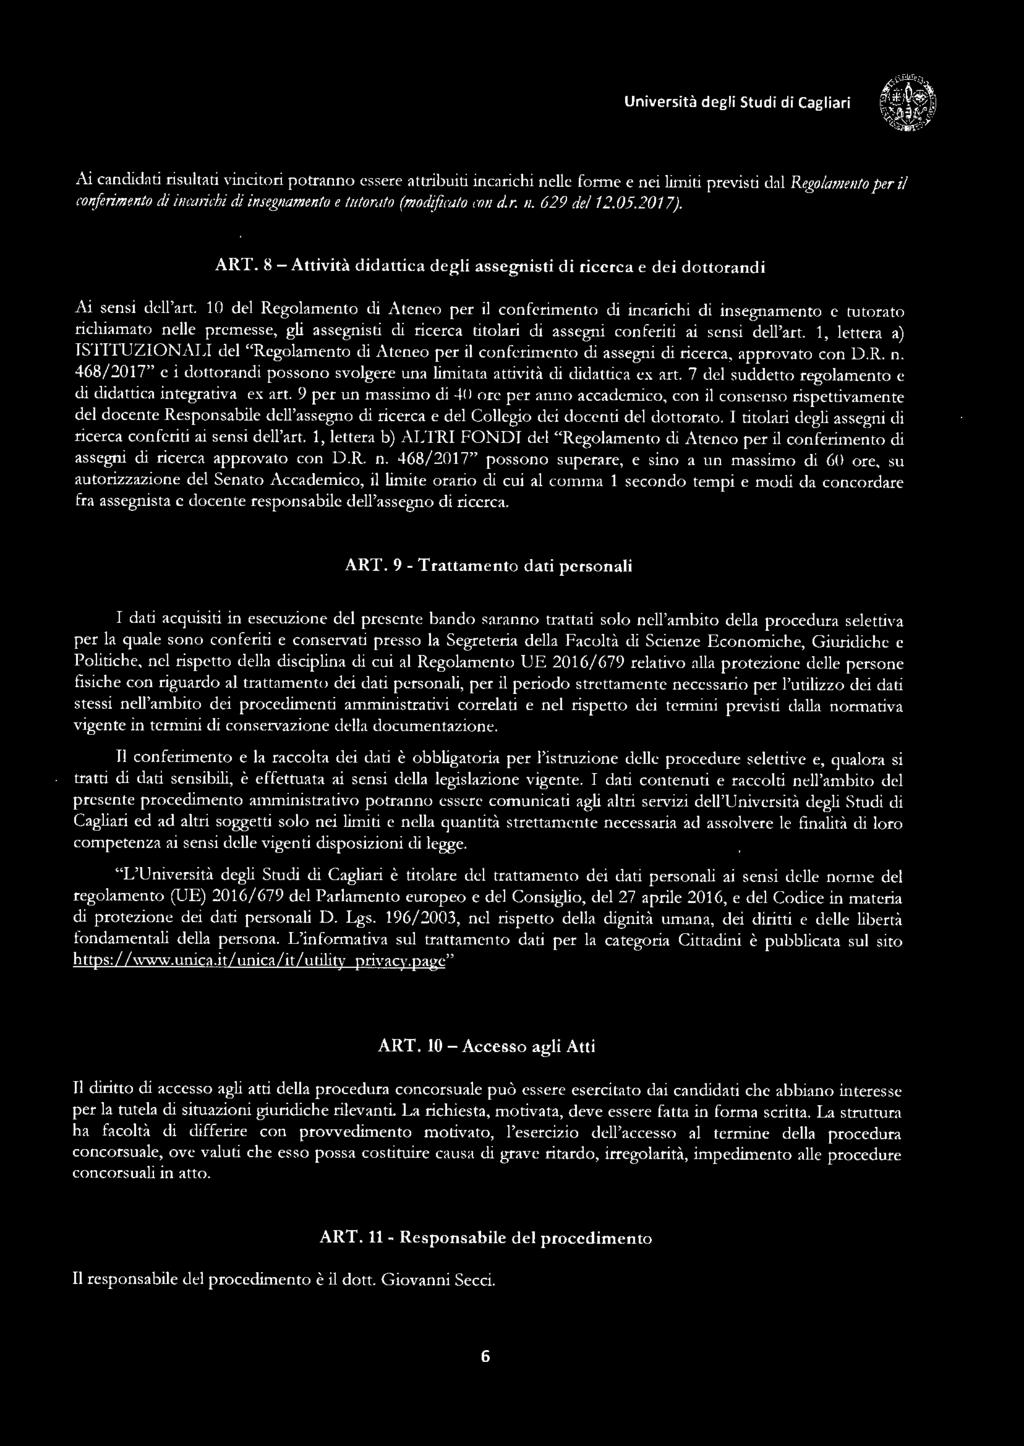 10 del Regolamento di Ateneo per il conferimento di incarichi di insegnamento e tutorato richiamato nelle premesse, gli assegnisti di ricerca titolari di assegni conferiti ai sensi dell'art.